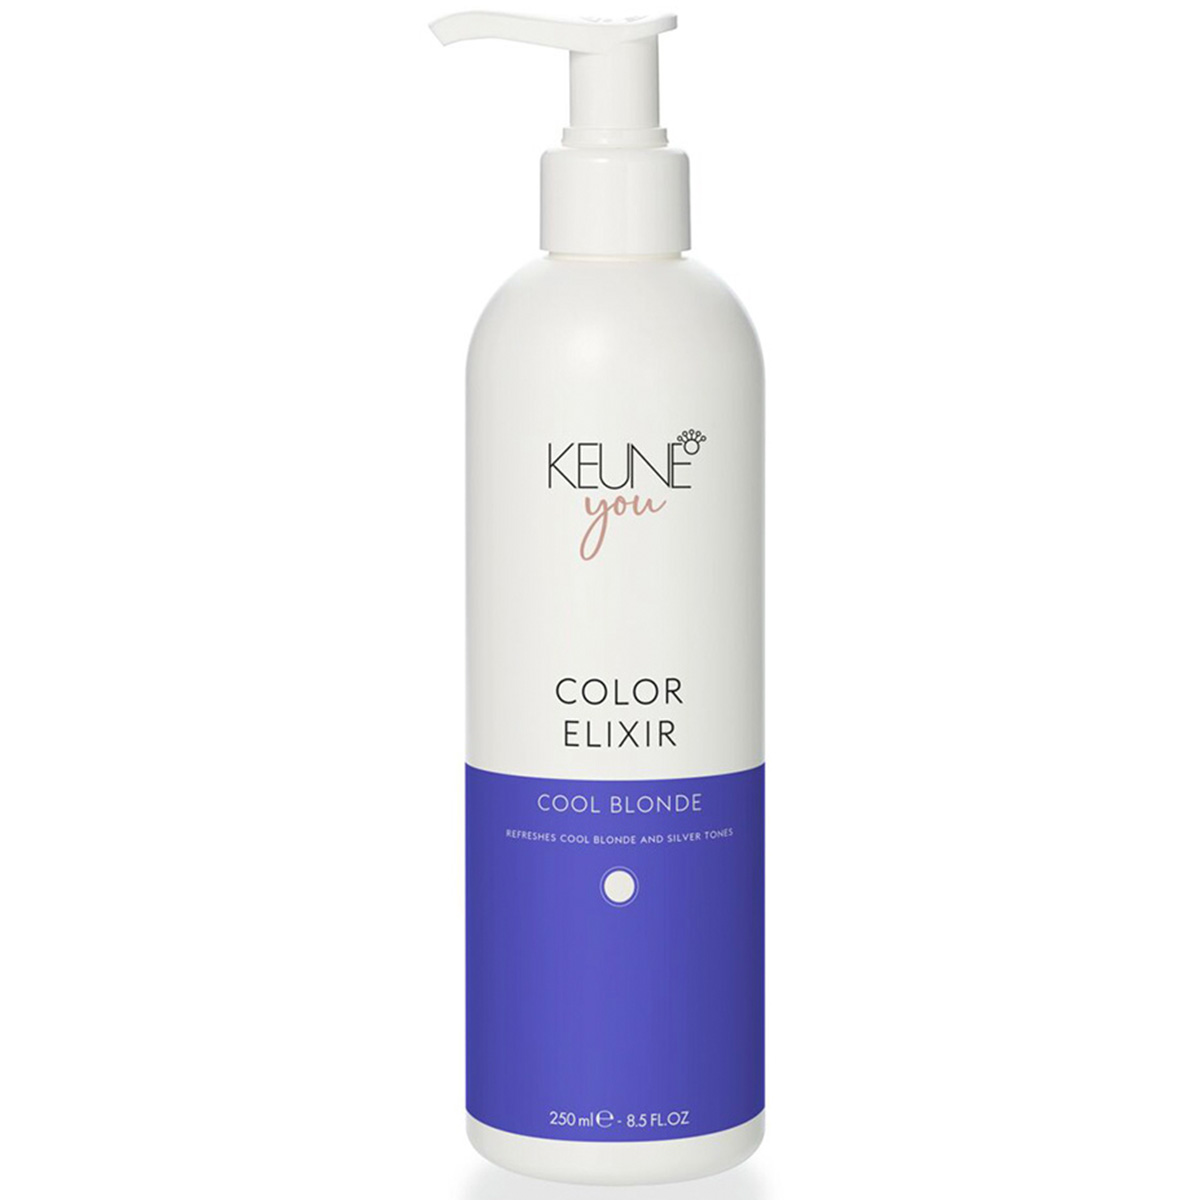 Keune Эликсир для светлых и седых волос Холодный Блонд Color Elixir Cool Blonde, 250 мл (Keune, You)